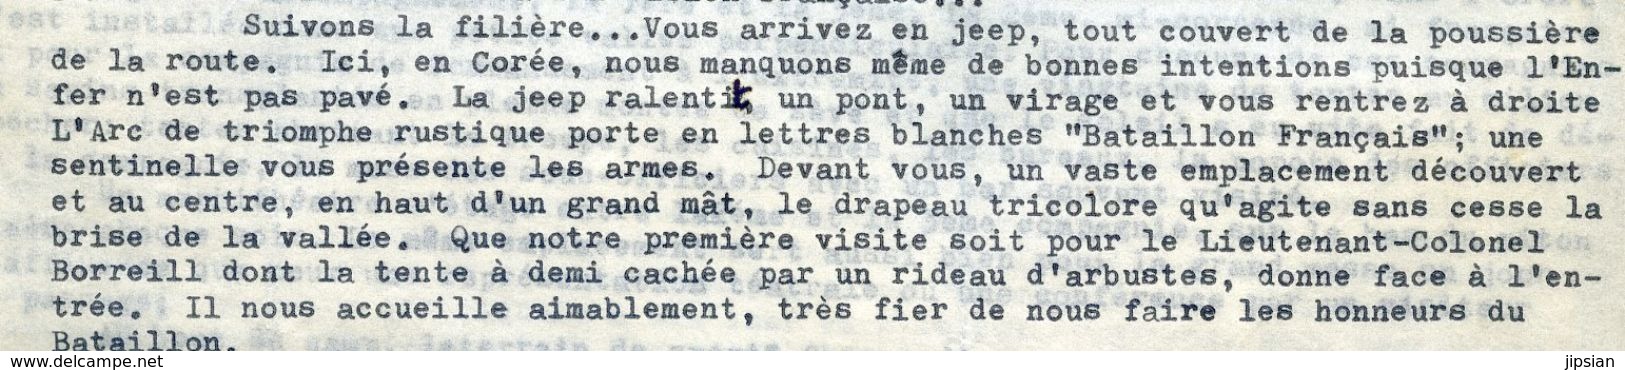 Guerre de Corée Authentique récit autographe Journal de Route par l' Aumonier Capitaine Gombert en 1952